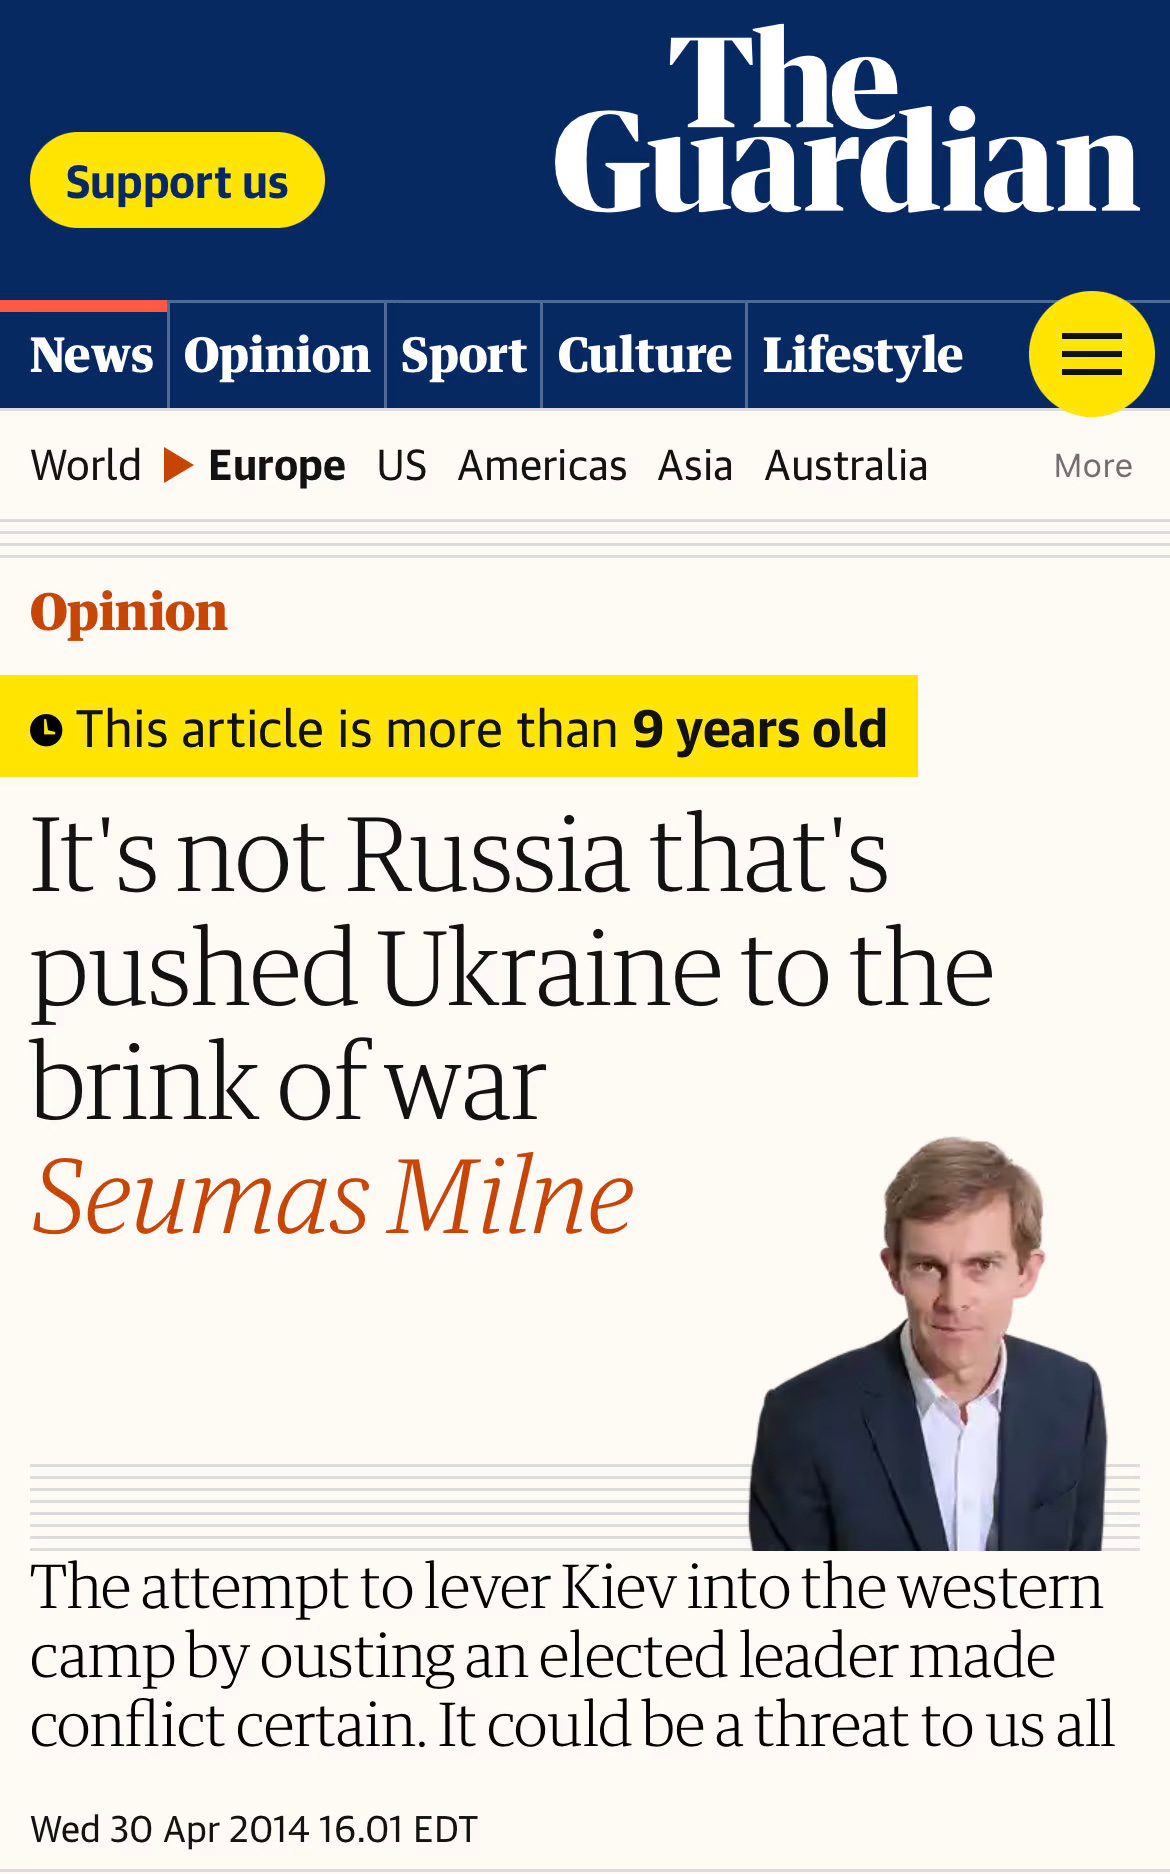 Arsip The Guardian tentang Rusia tahun 2014